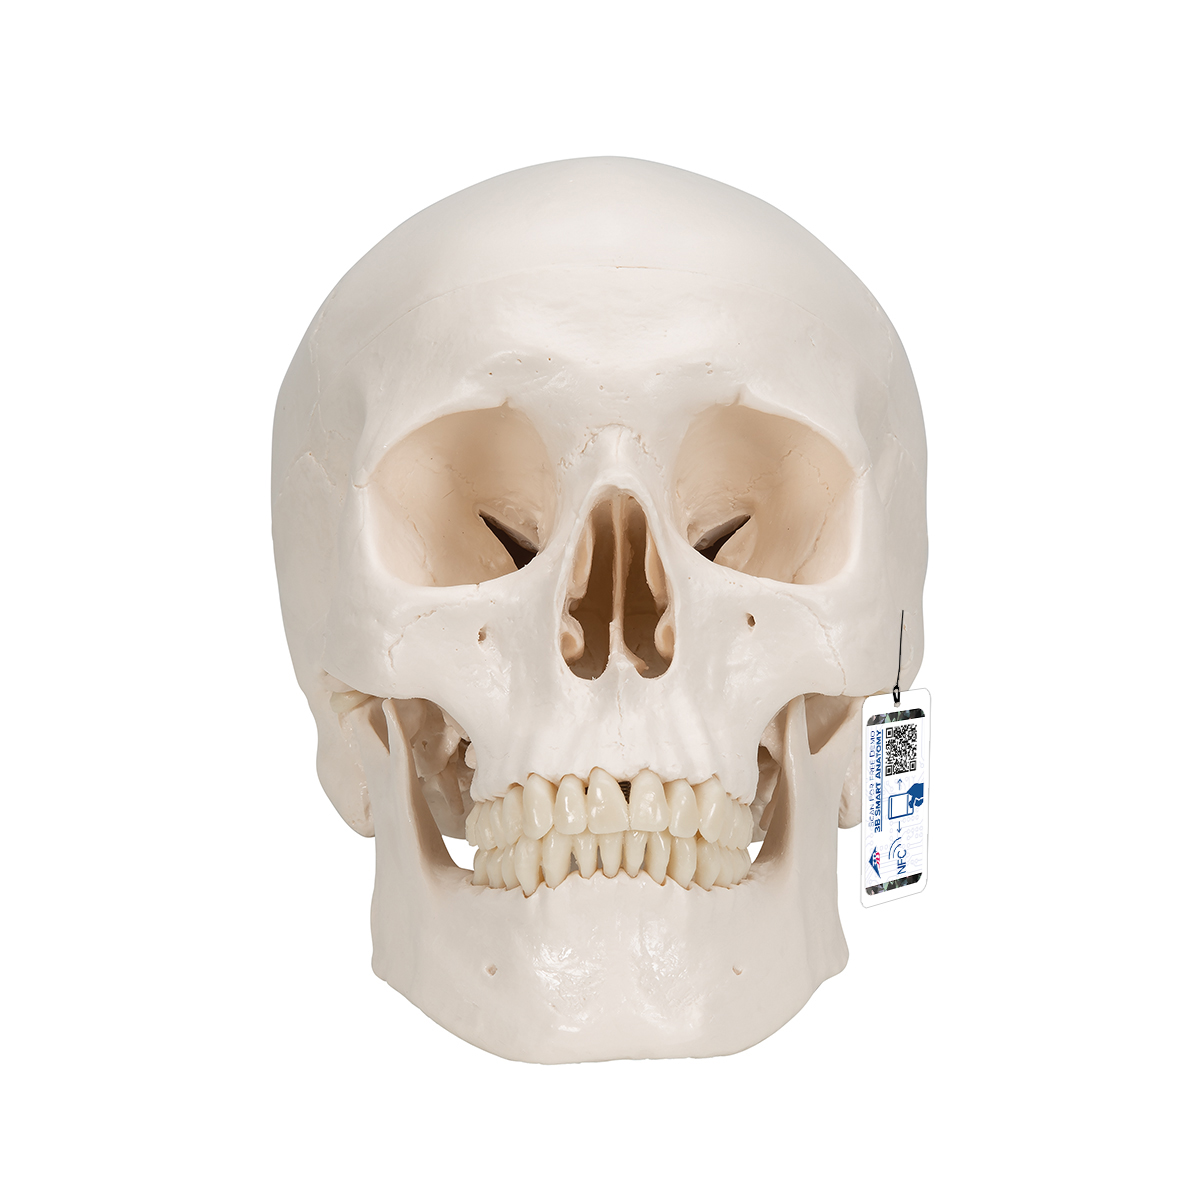 Menschliches Schädel Modell "Klassik", magnetisch 3-teilig - 3B Smart Anatomy, Bestellnummer 1020159, A20, 3B Scientific